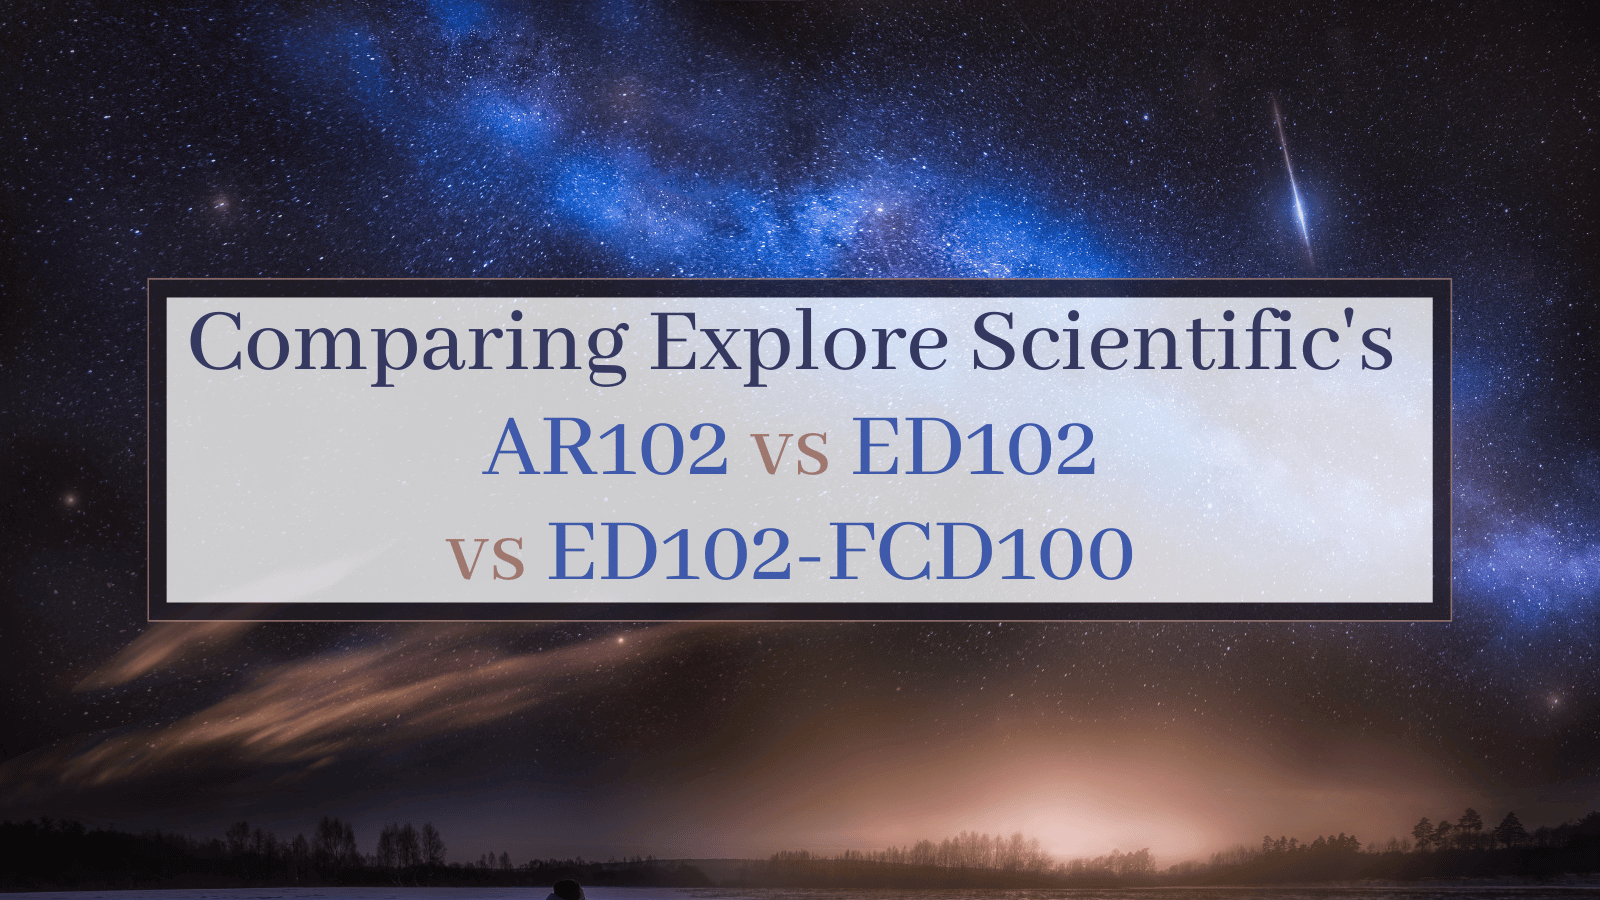 Comparing Explore Scientific's AR102 vs ED102 vs ED102-FCD100